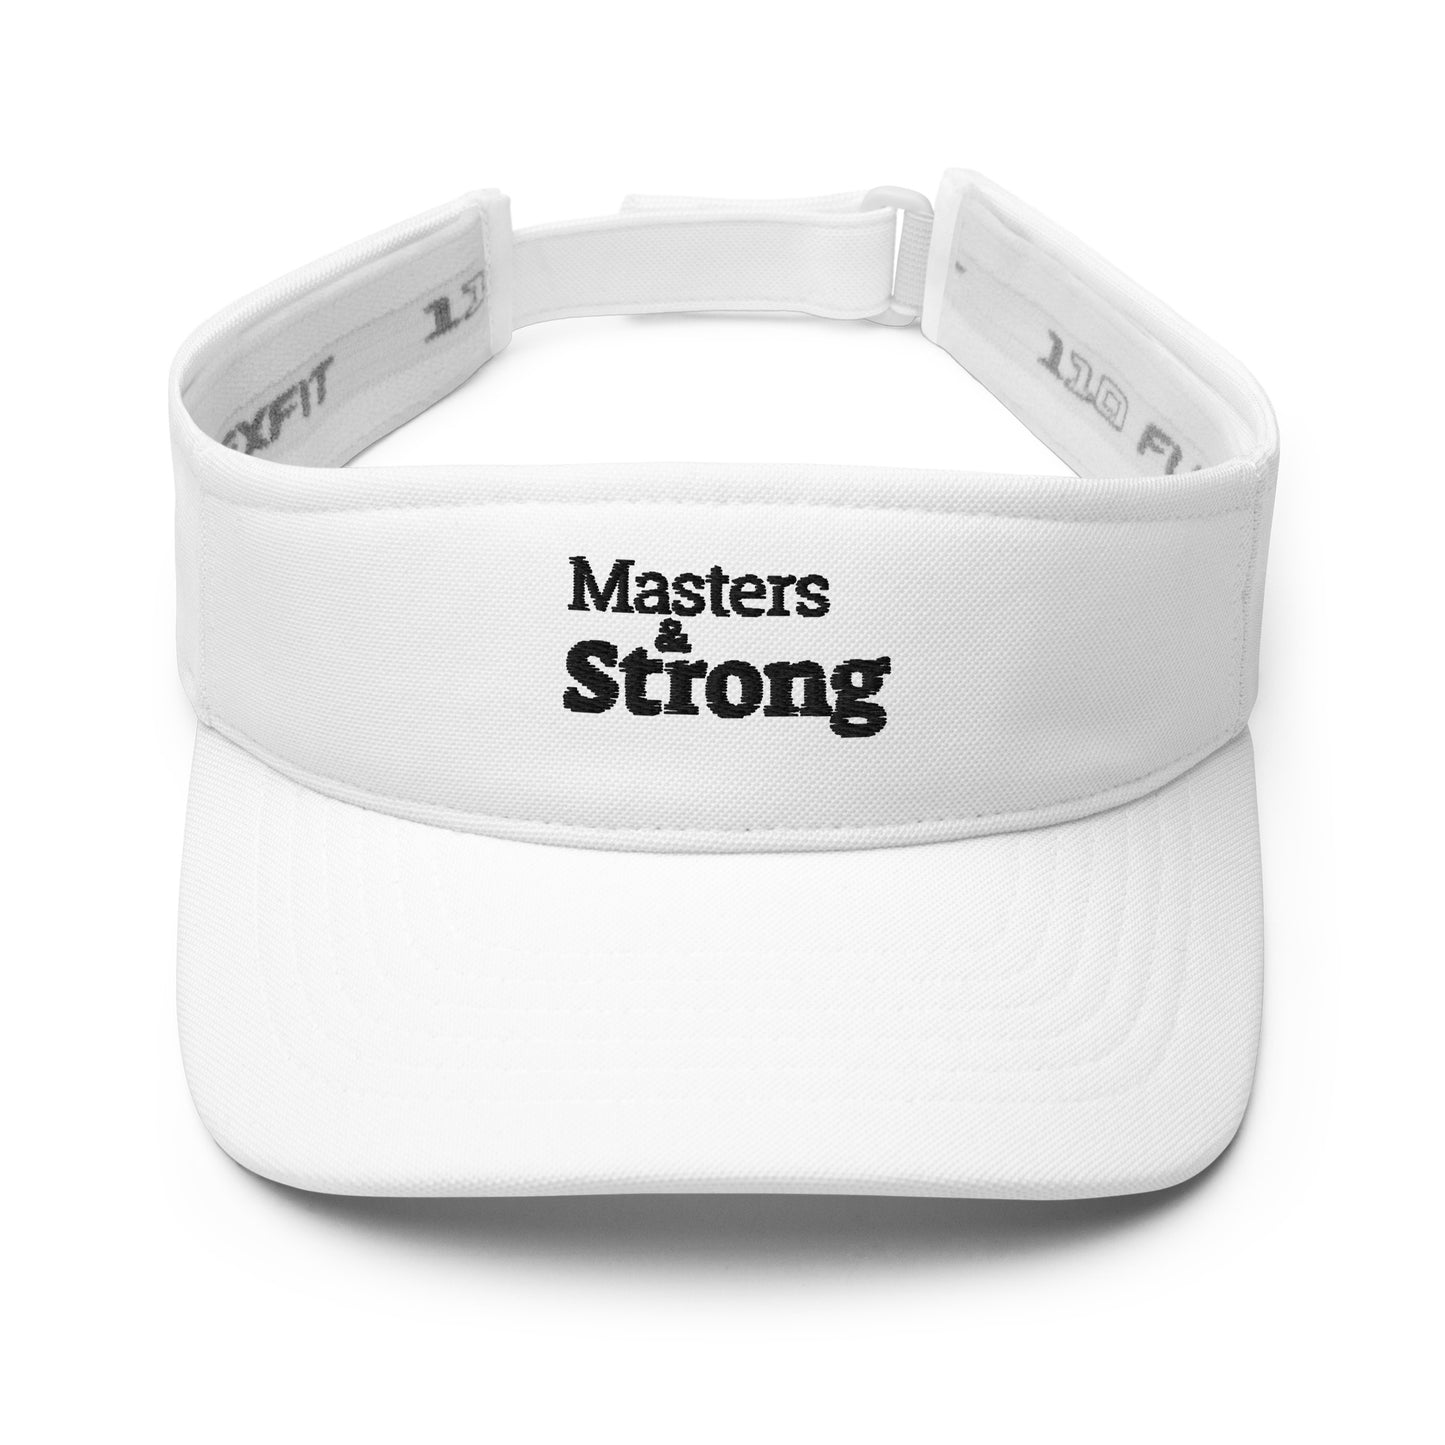 Masters & Strong visor